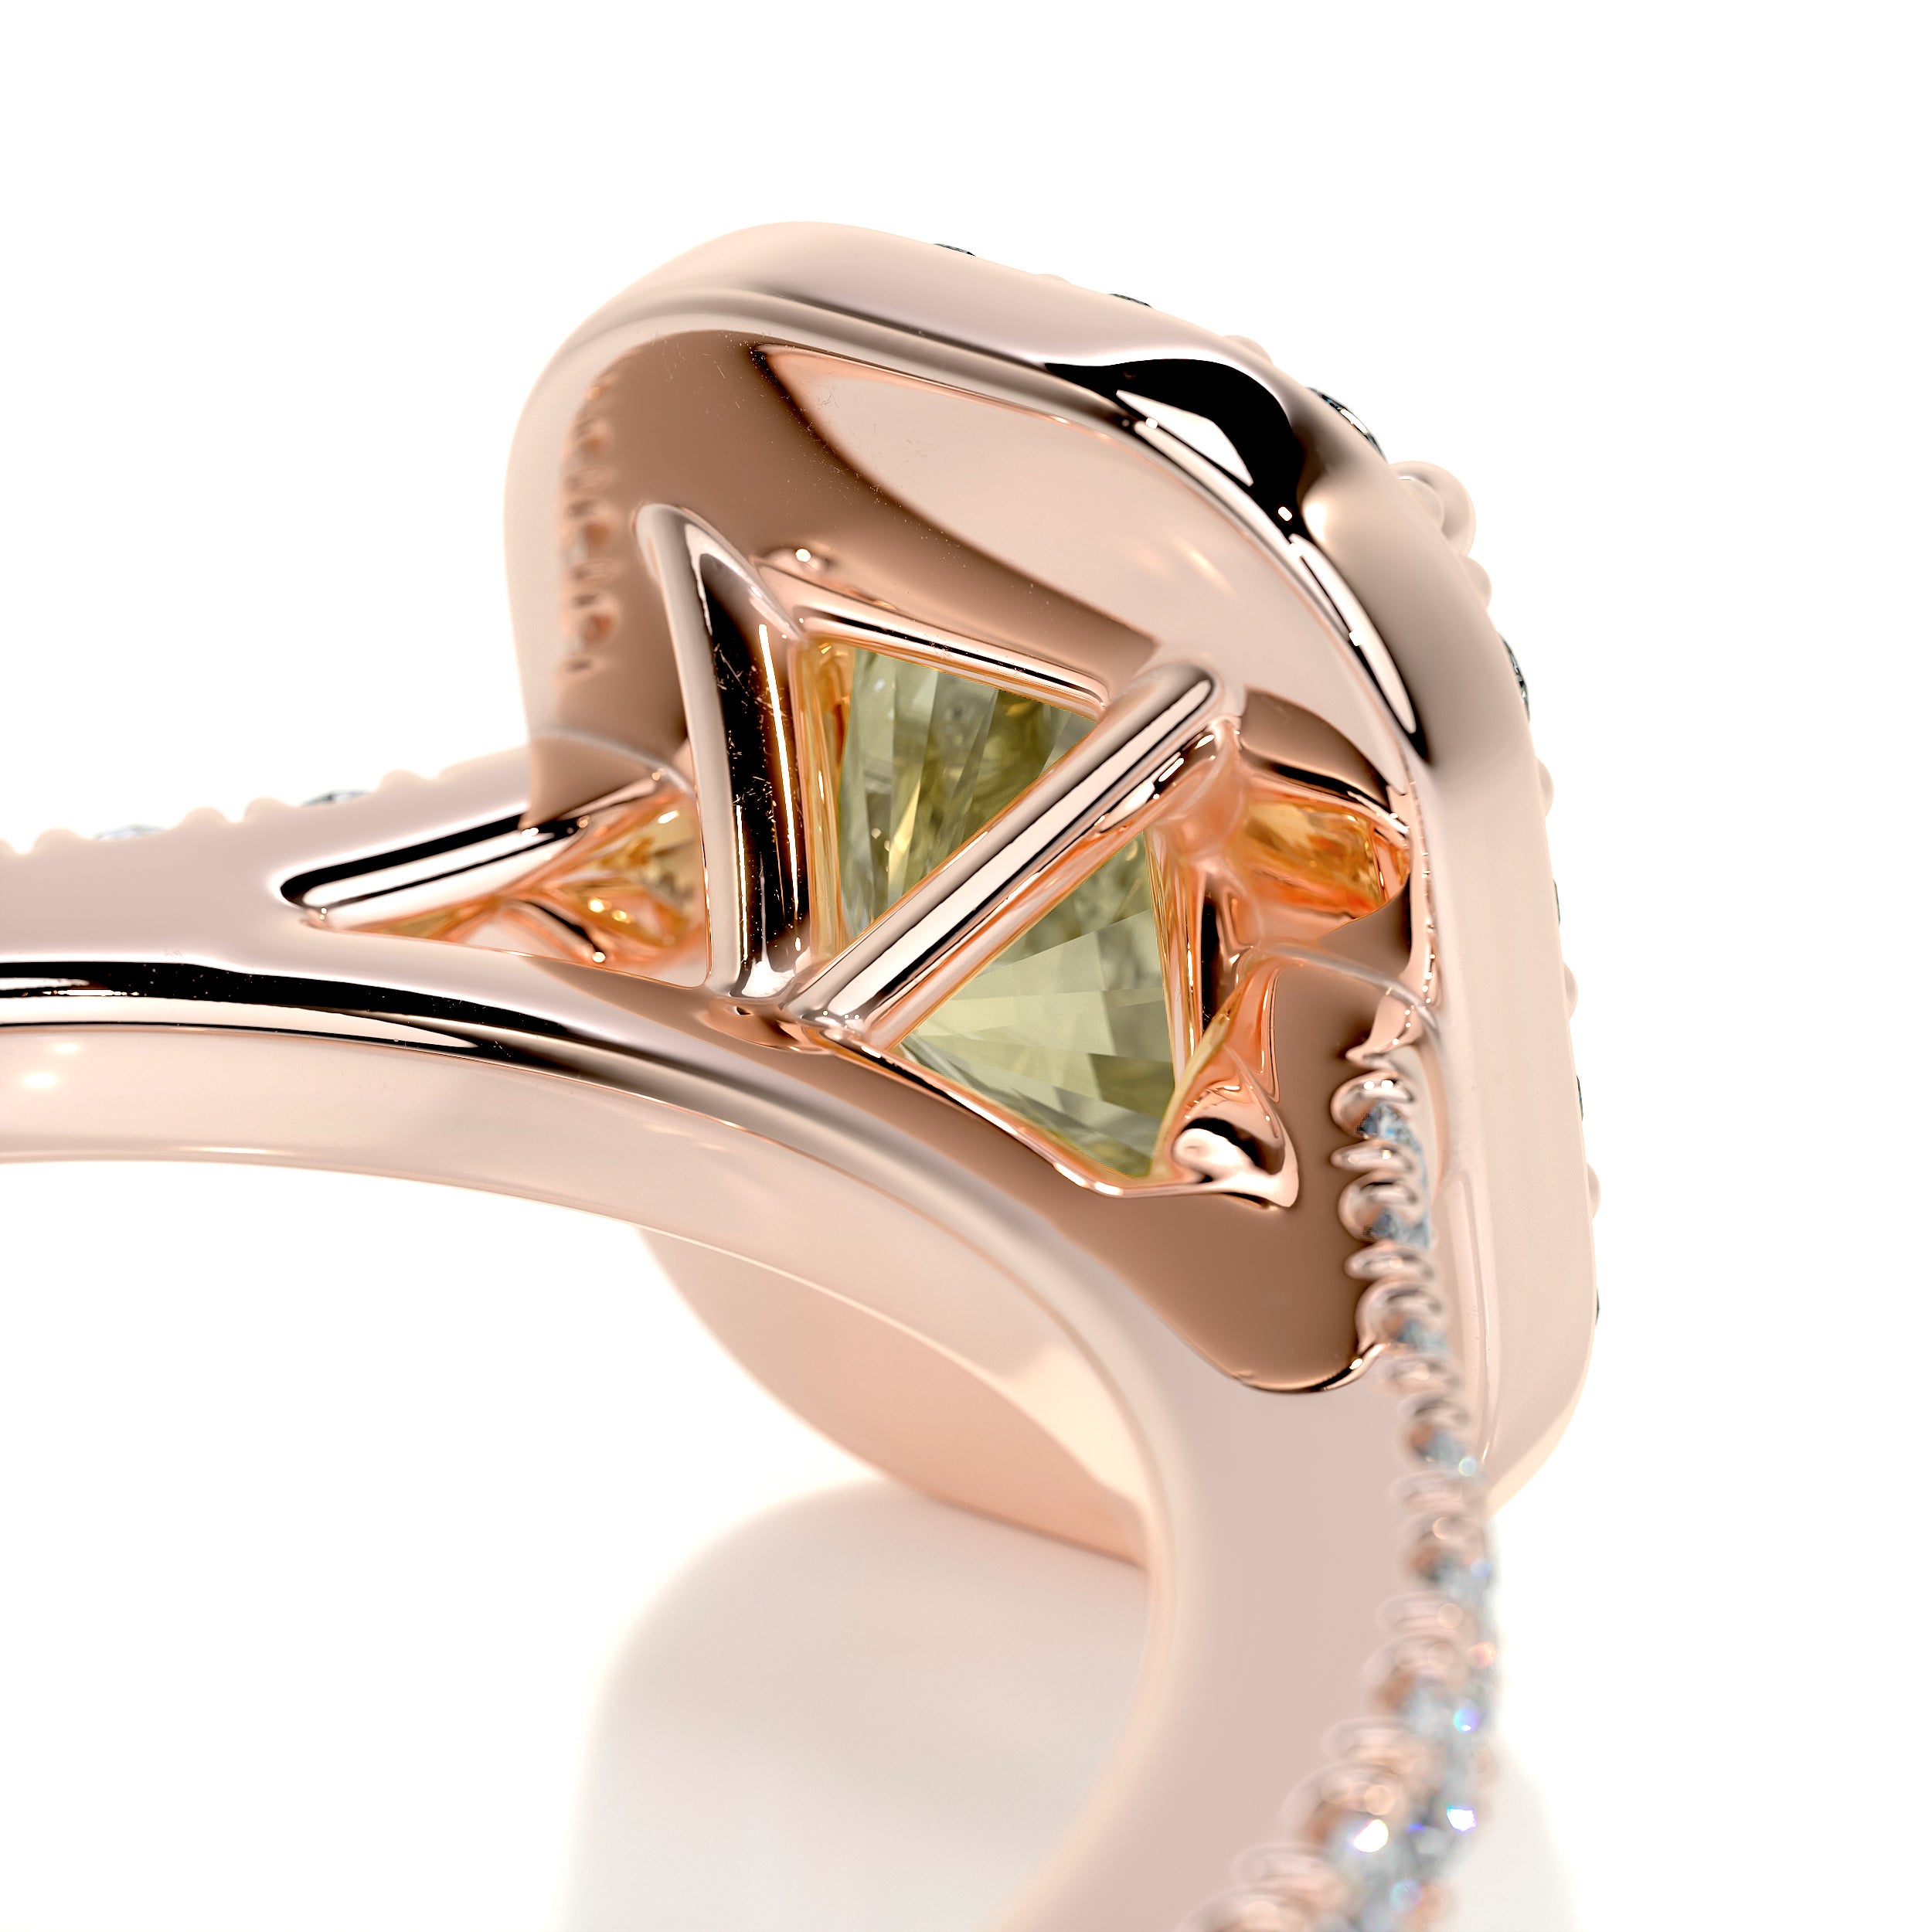 Cora Diamond Engagement Ring   (1.3 Carat) -14K Rose Gold